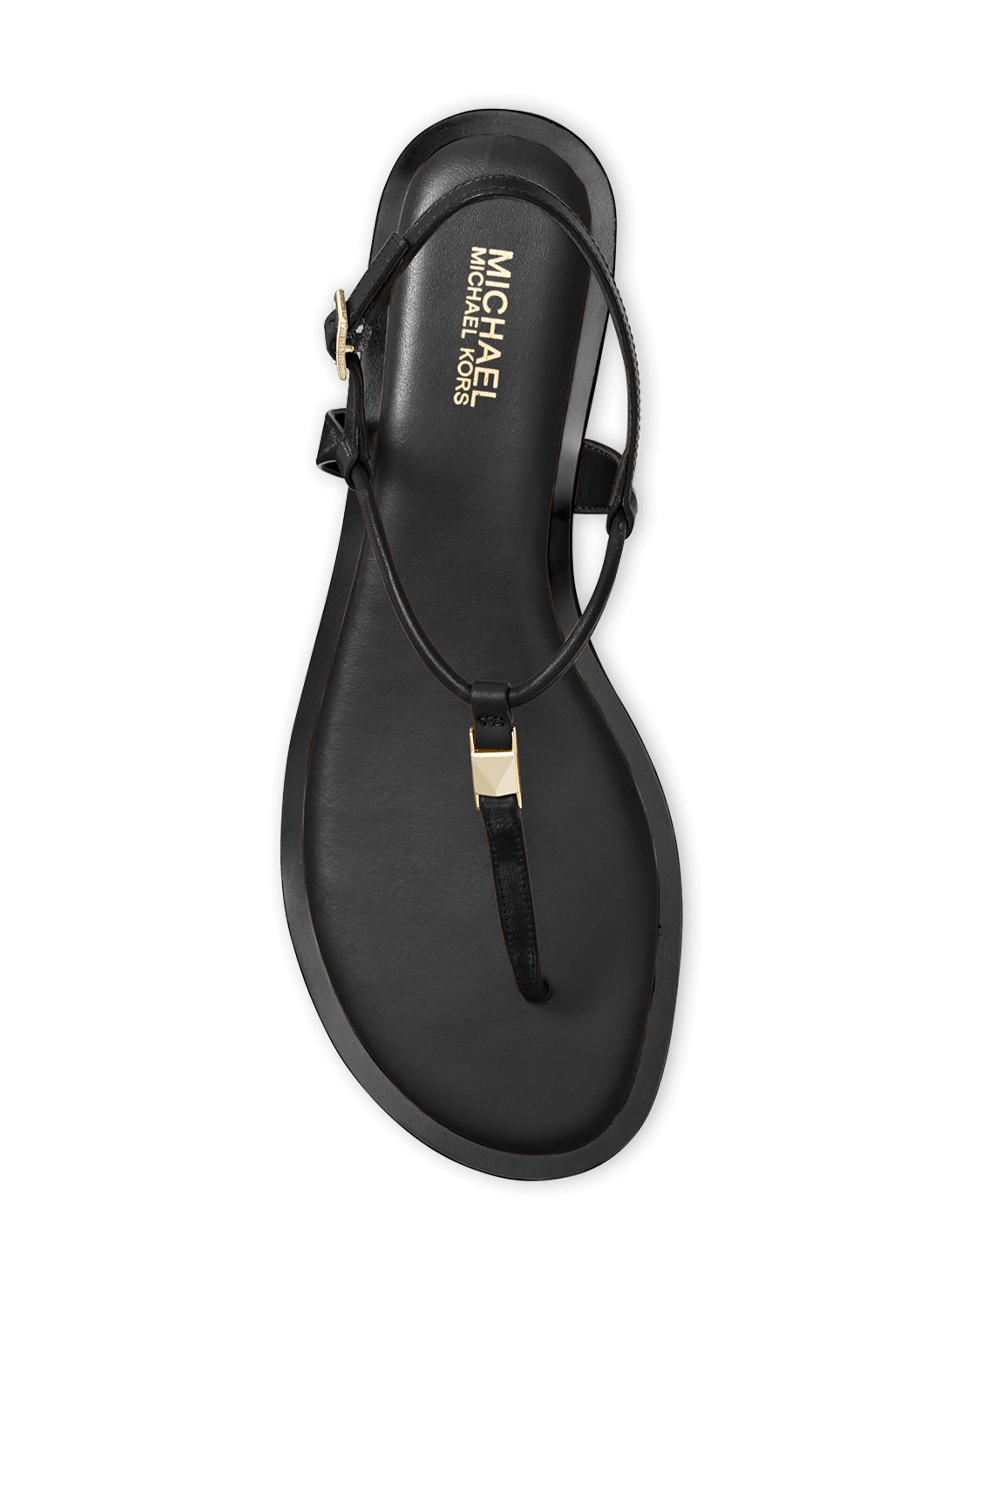 Glitter Chain-Mesh Sandal in Black MICHAEL KORS